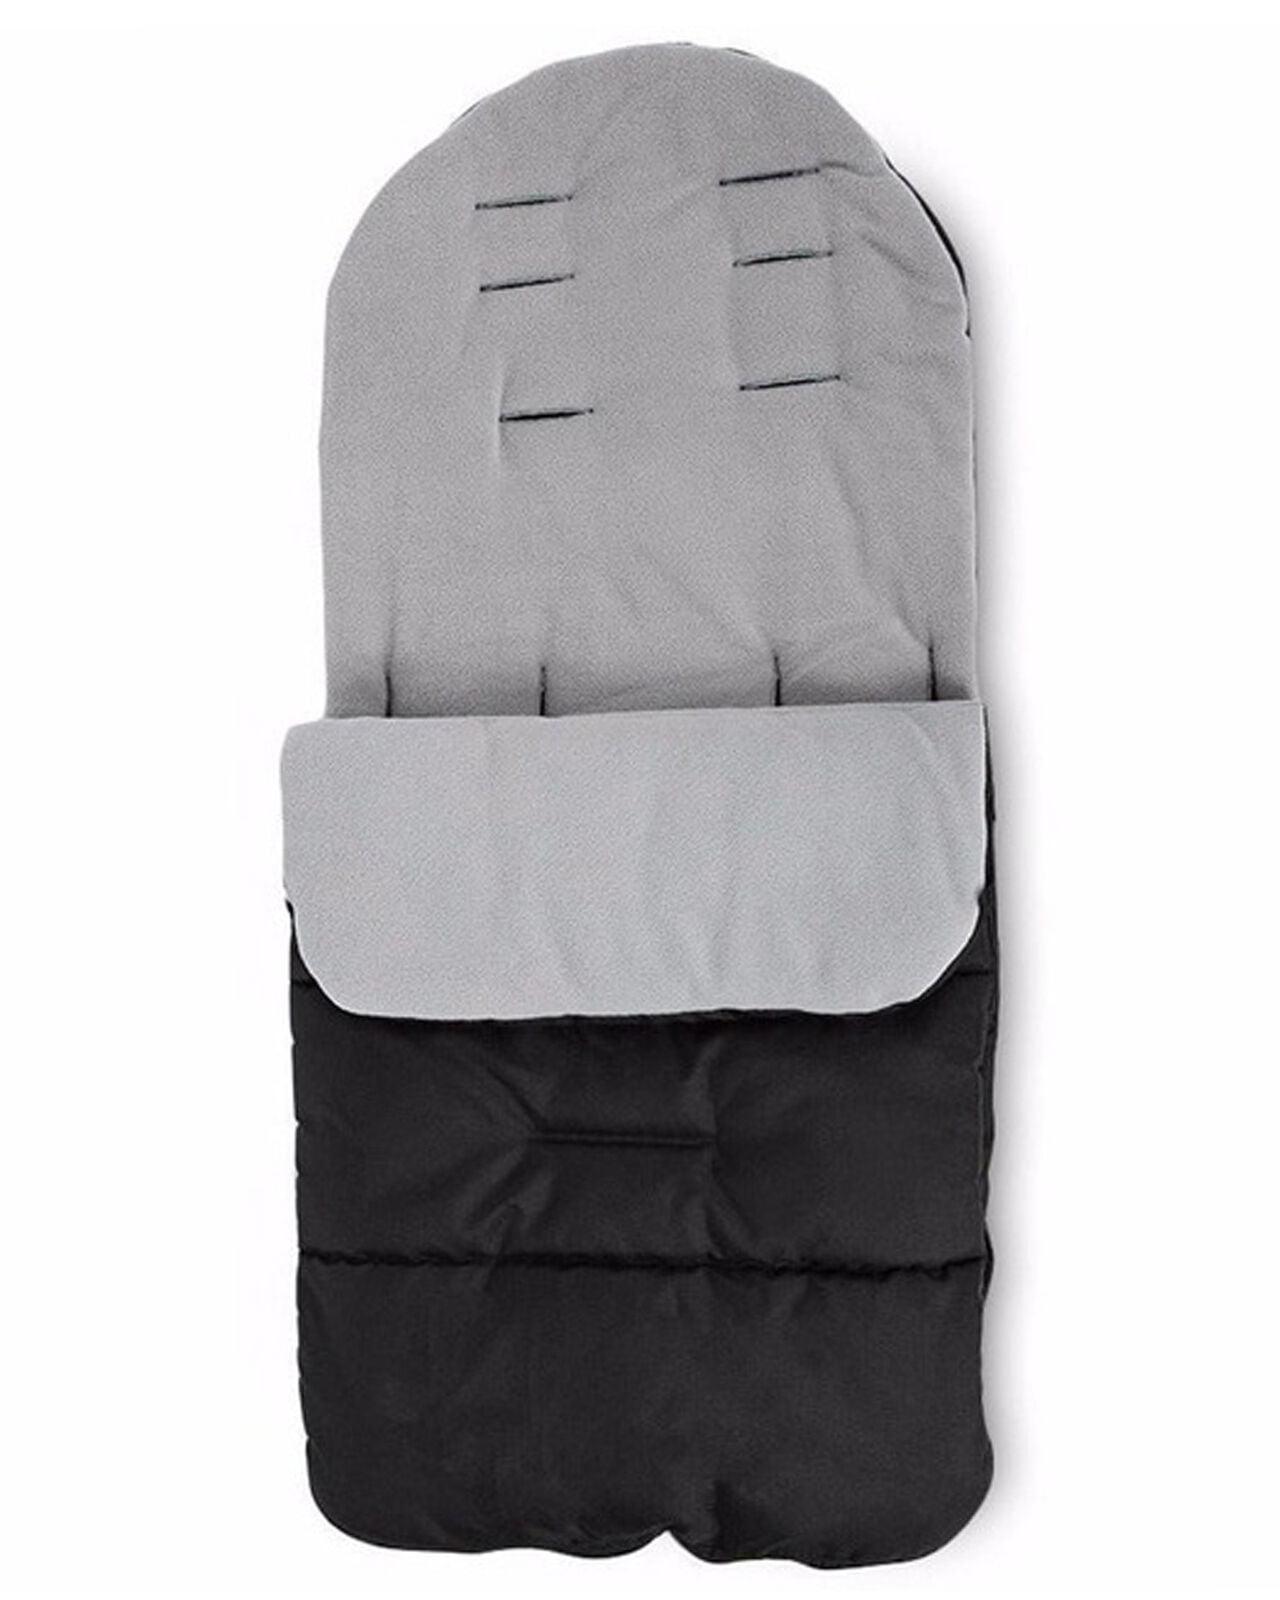 pushchair sleeping bags